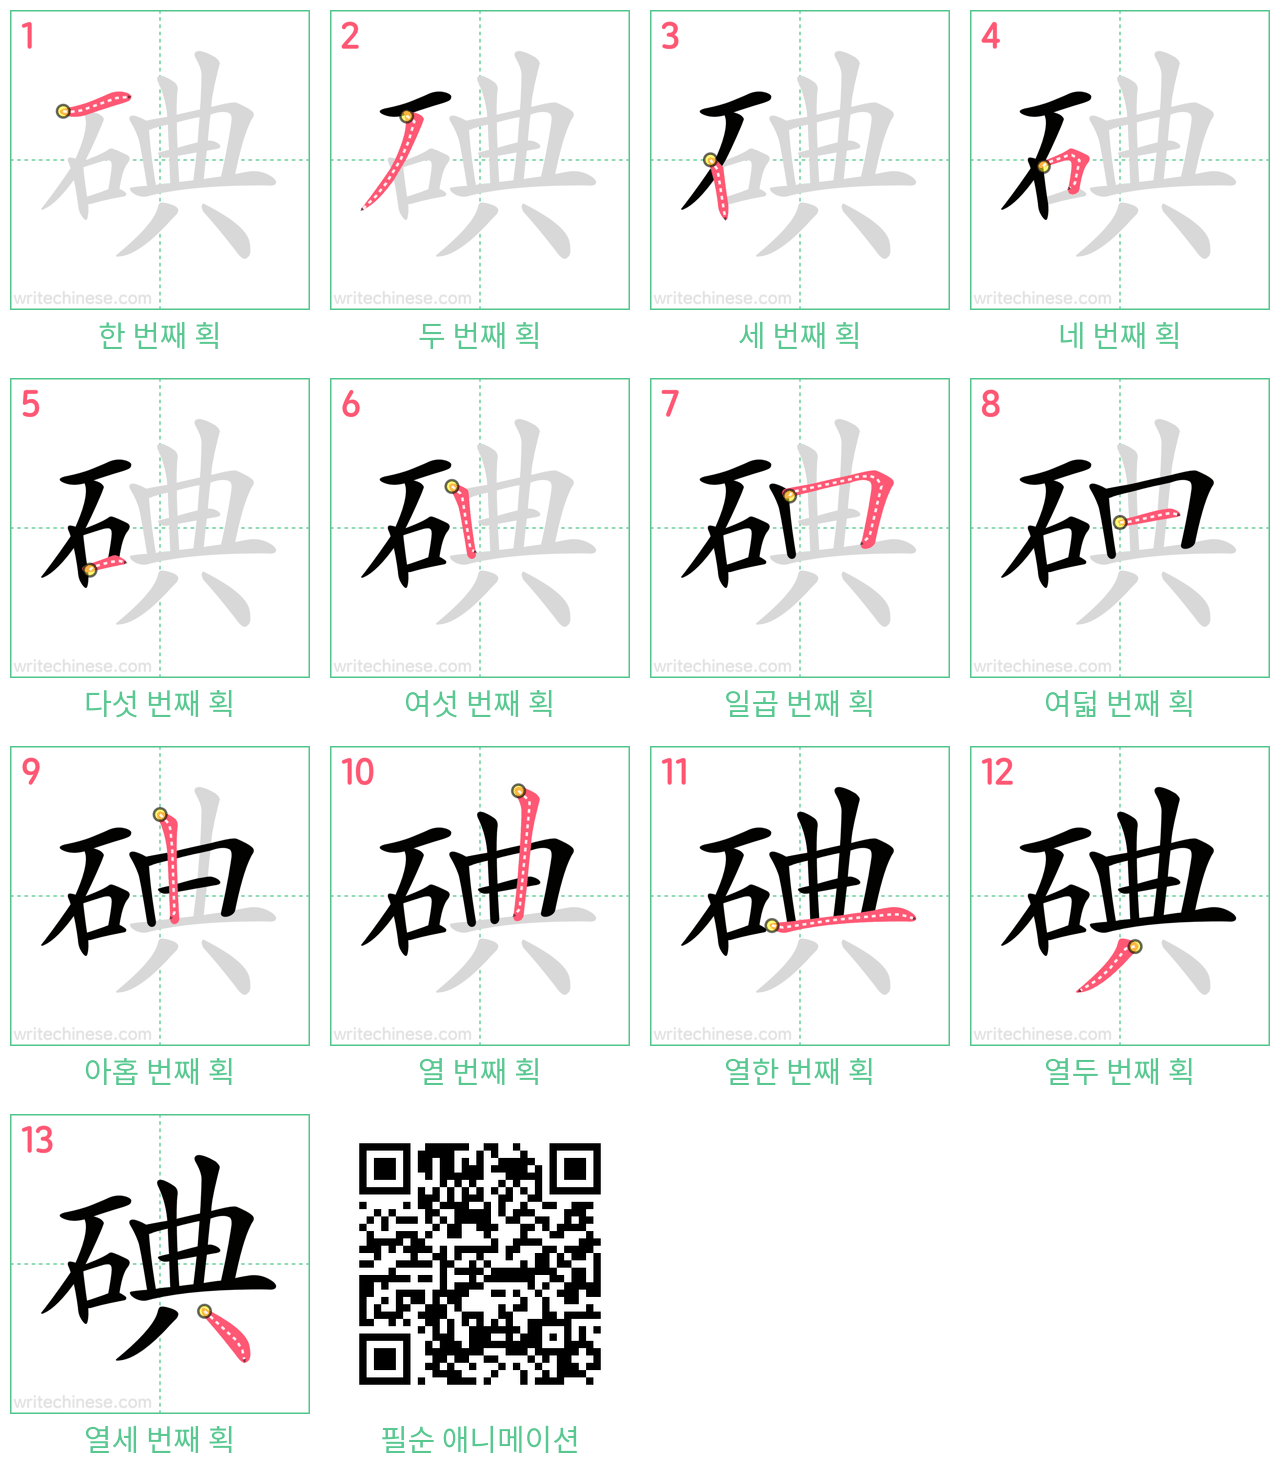 碘 step-by-step stroke order diagrams